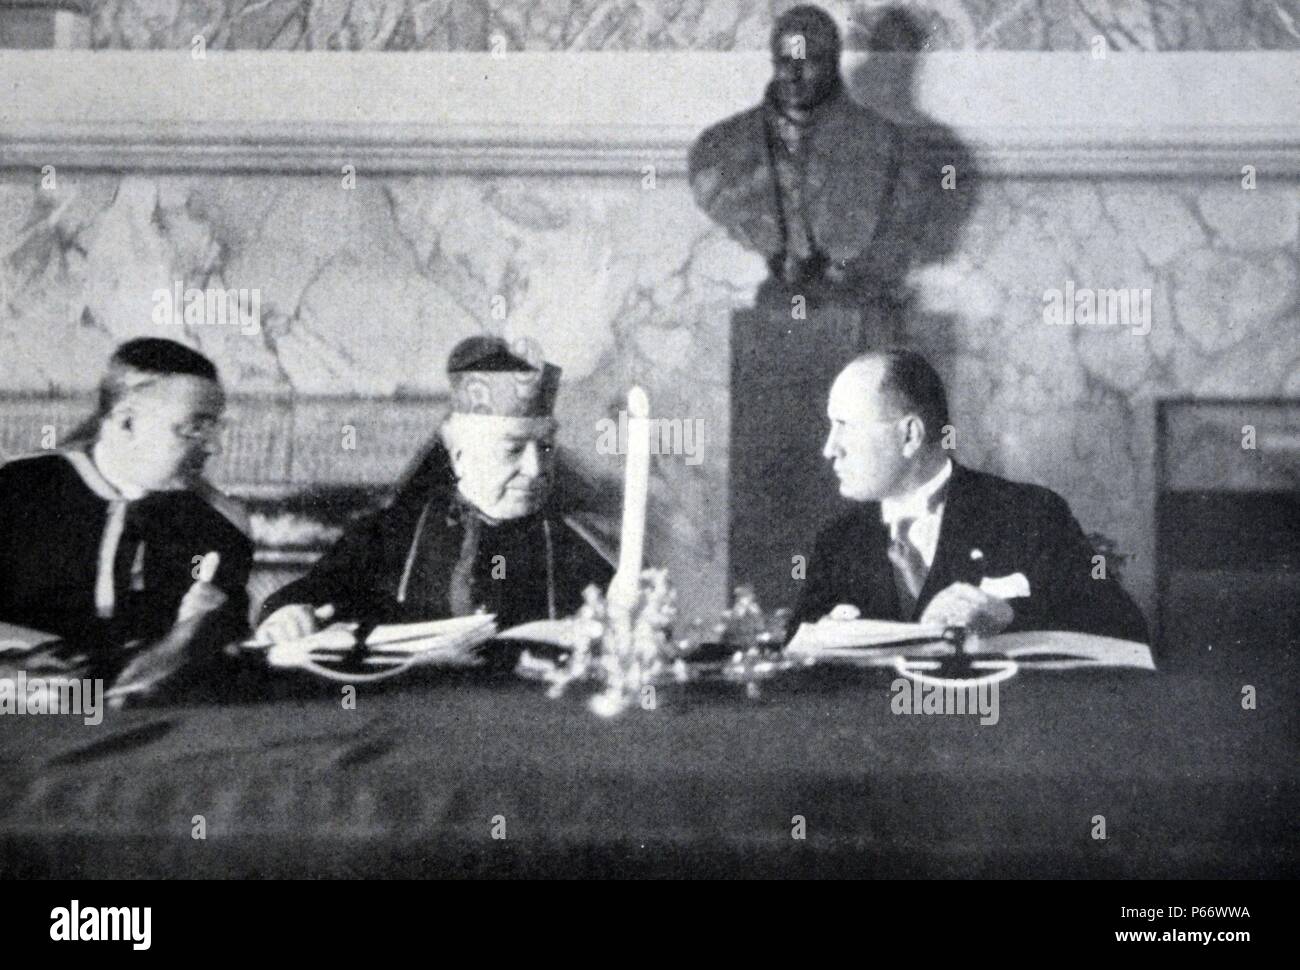 Rom - Februar 11, 1929 - S. EM. Kardinal Pietro Gasparri, Bevollmächtigter der SS Pius XI., und S.E. Cav. Benito Mussolini, Bevollmächtigter von S. M. der König von Italien, sind Austausch von Credenzali vor dem 'Lateranverträge' signieren. Stockfoto